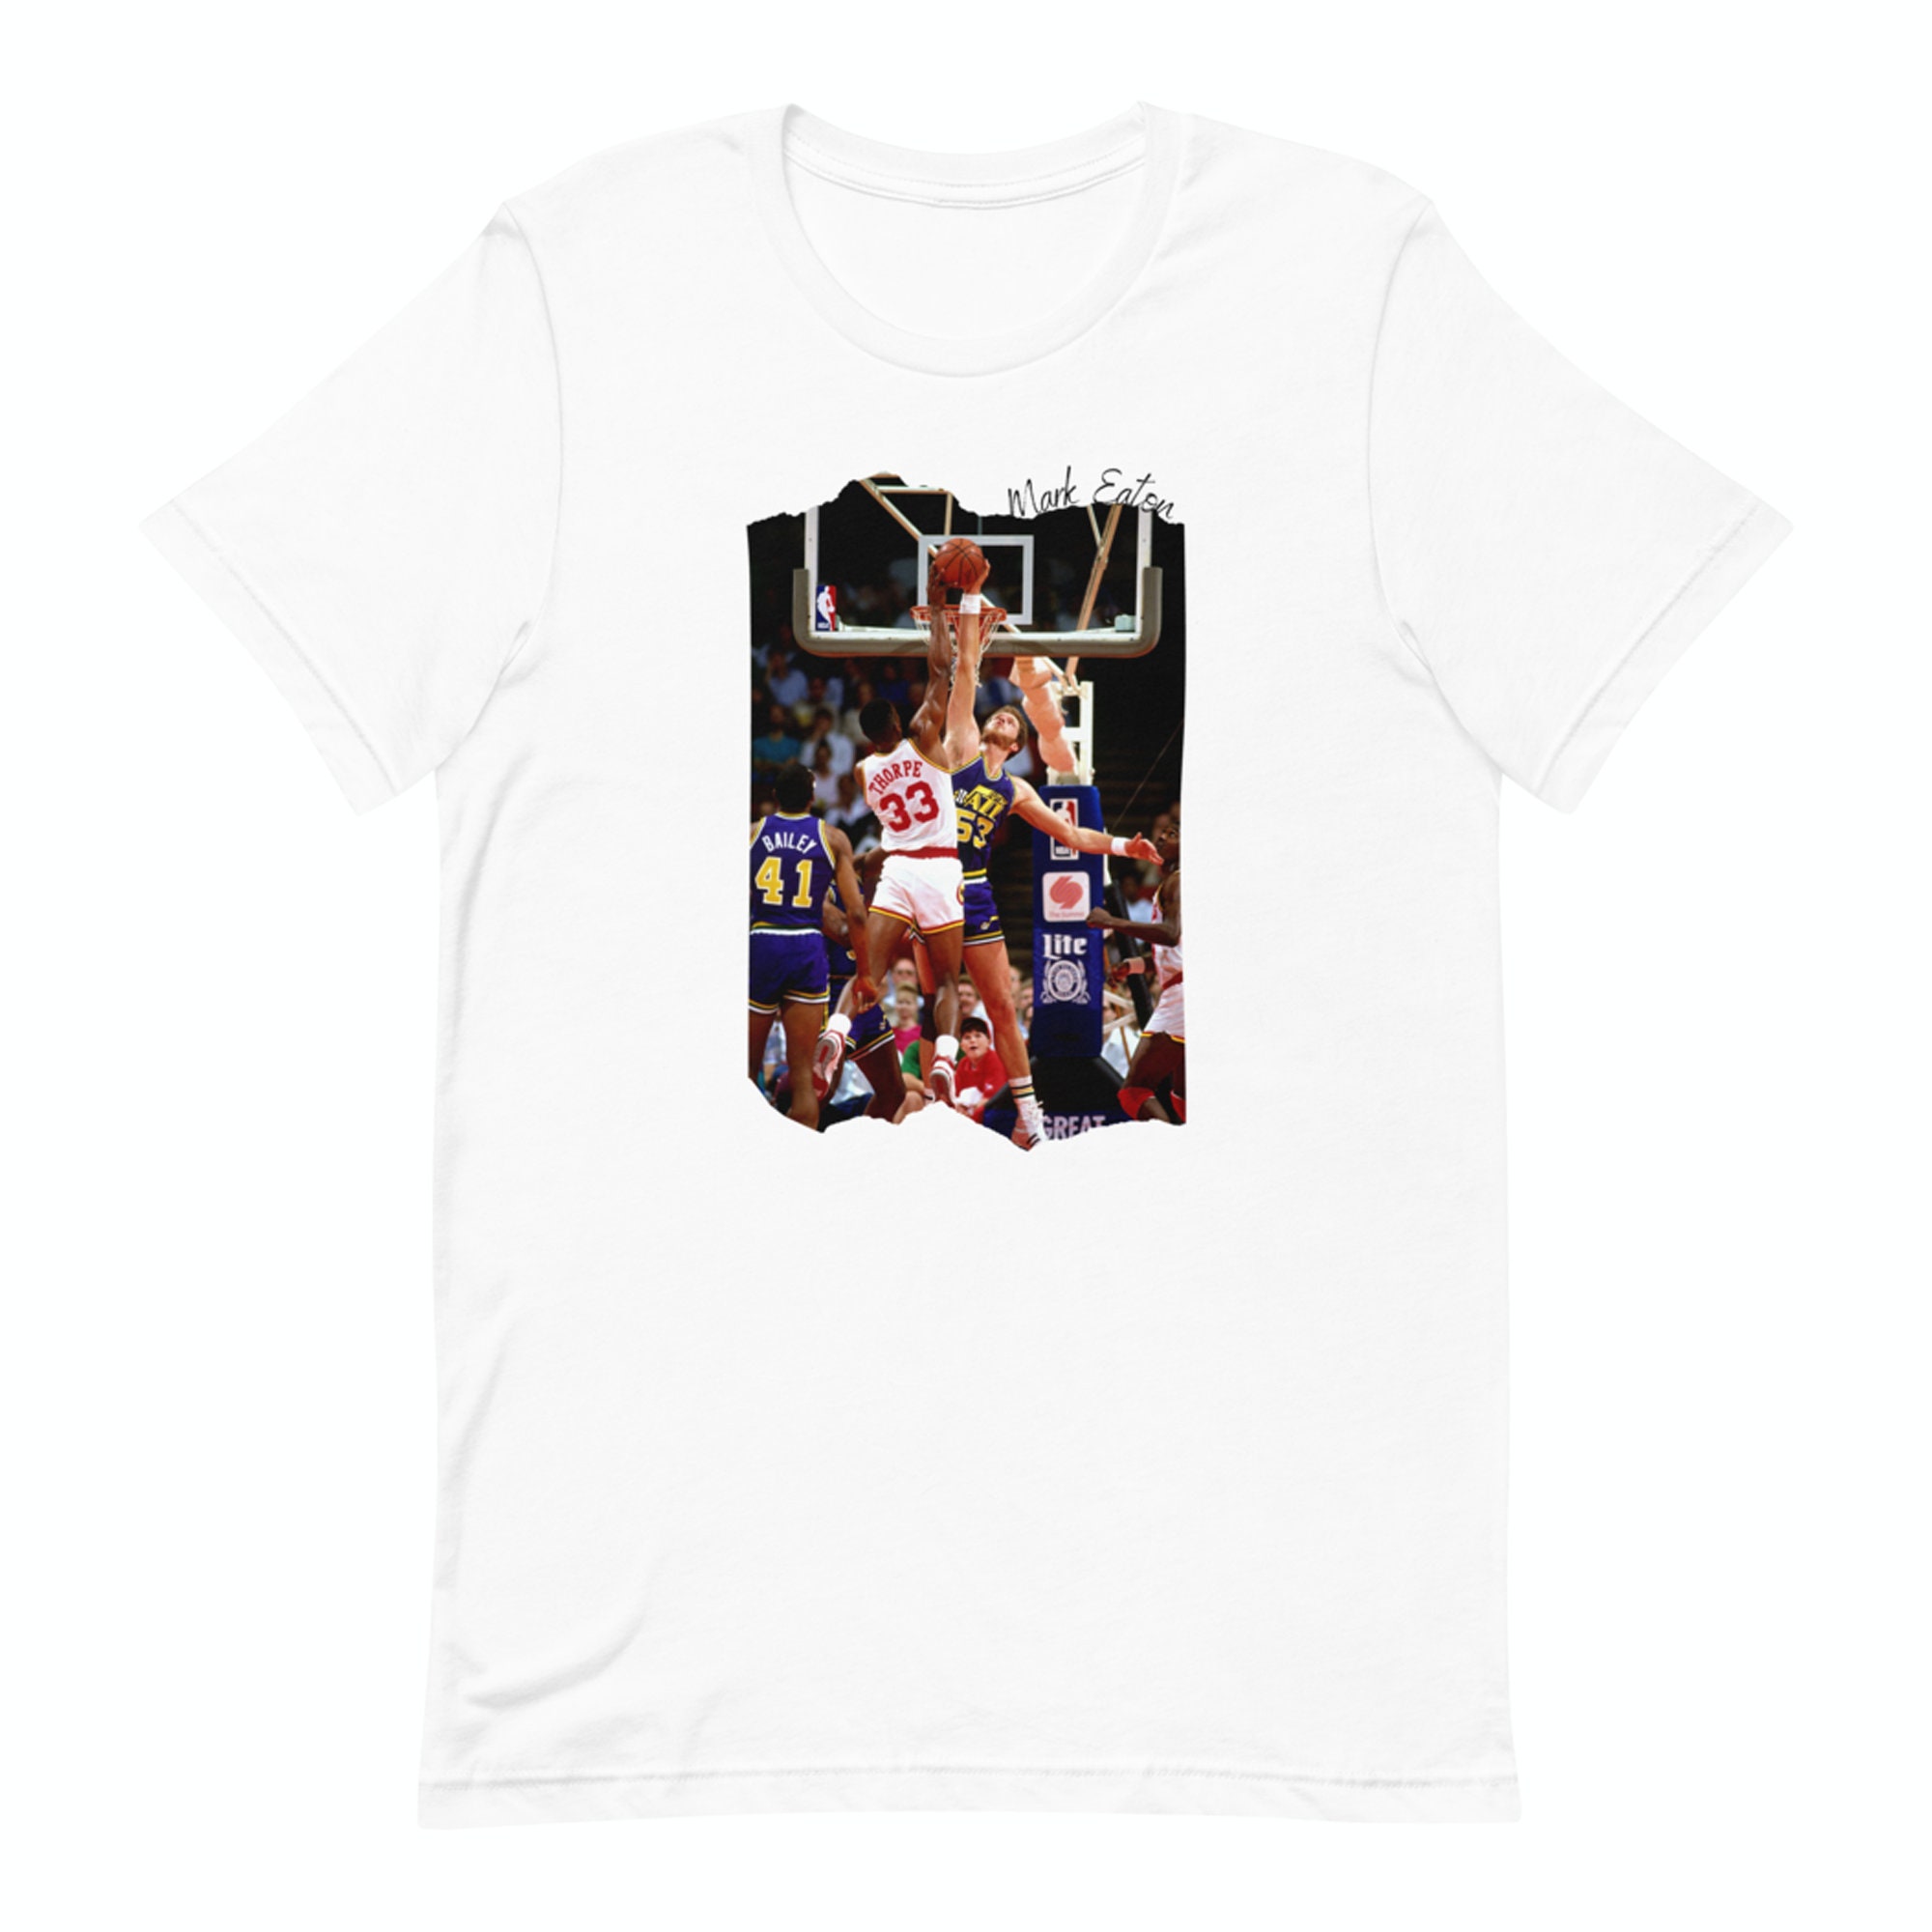 Alstyle Manute Bol Retro Basketball T Shirt